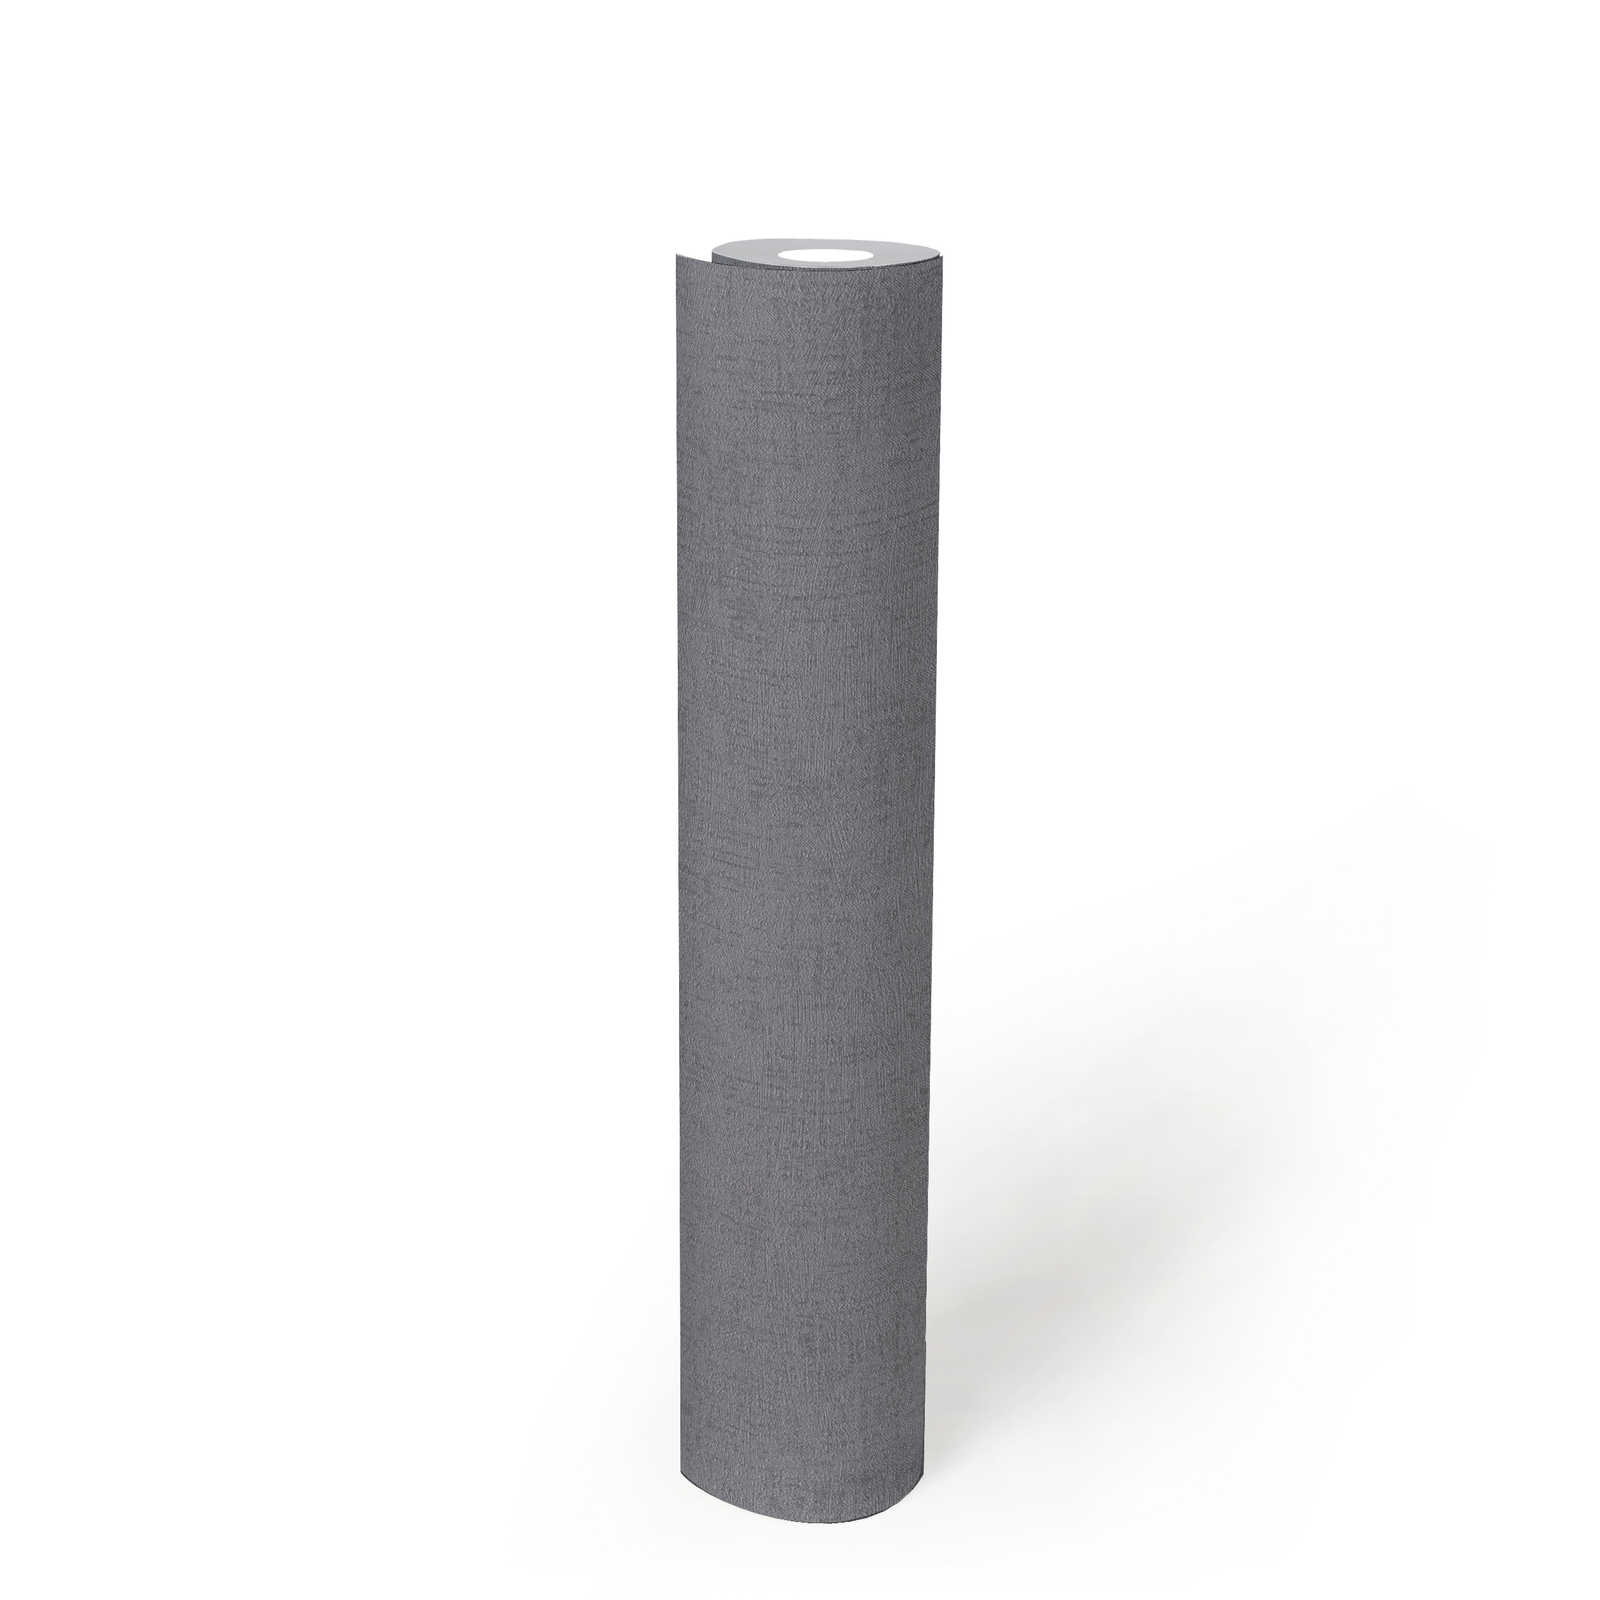             Carta da parati liscia grigio acciaio con struttura ed effetto lucido - grigio, metallizzato
        